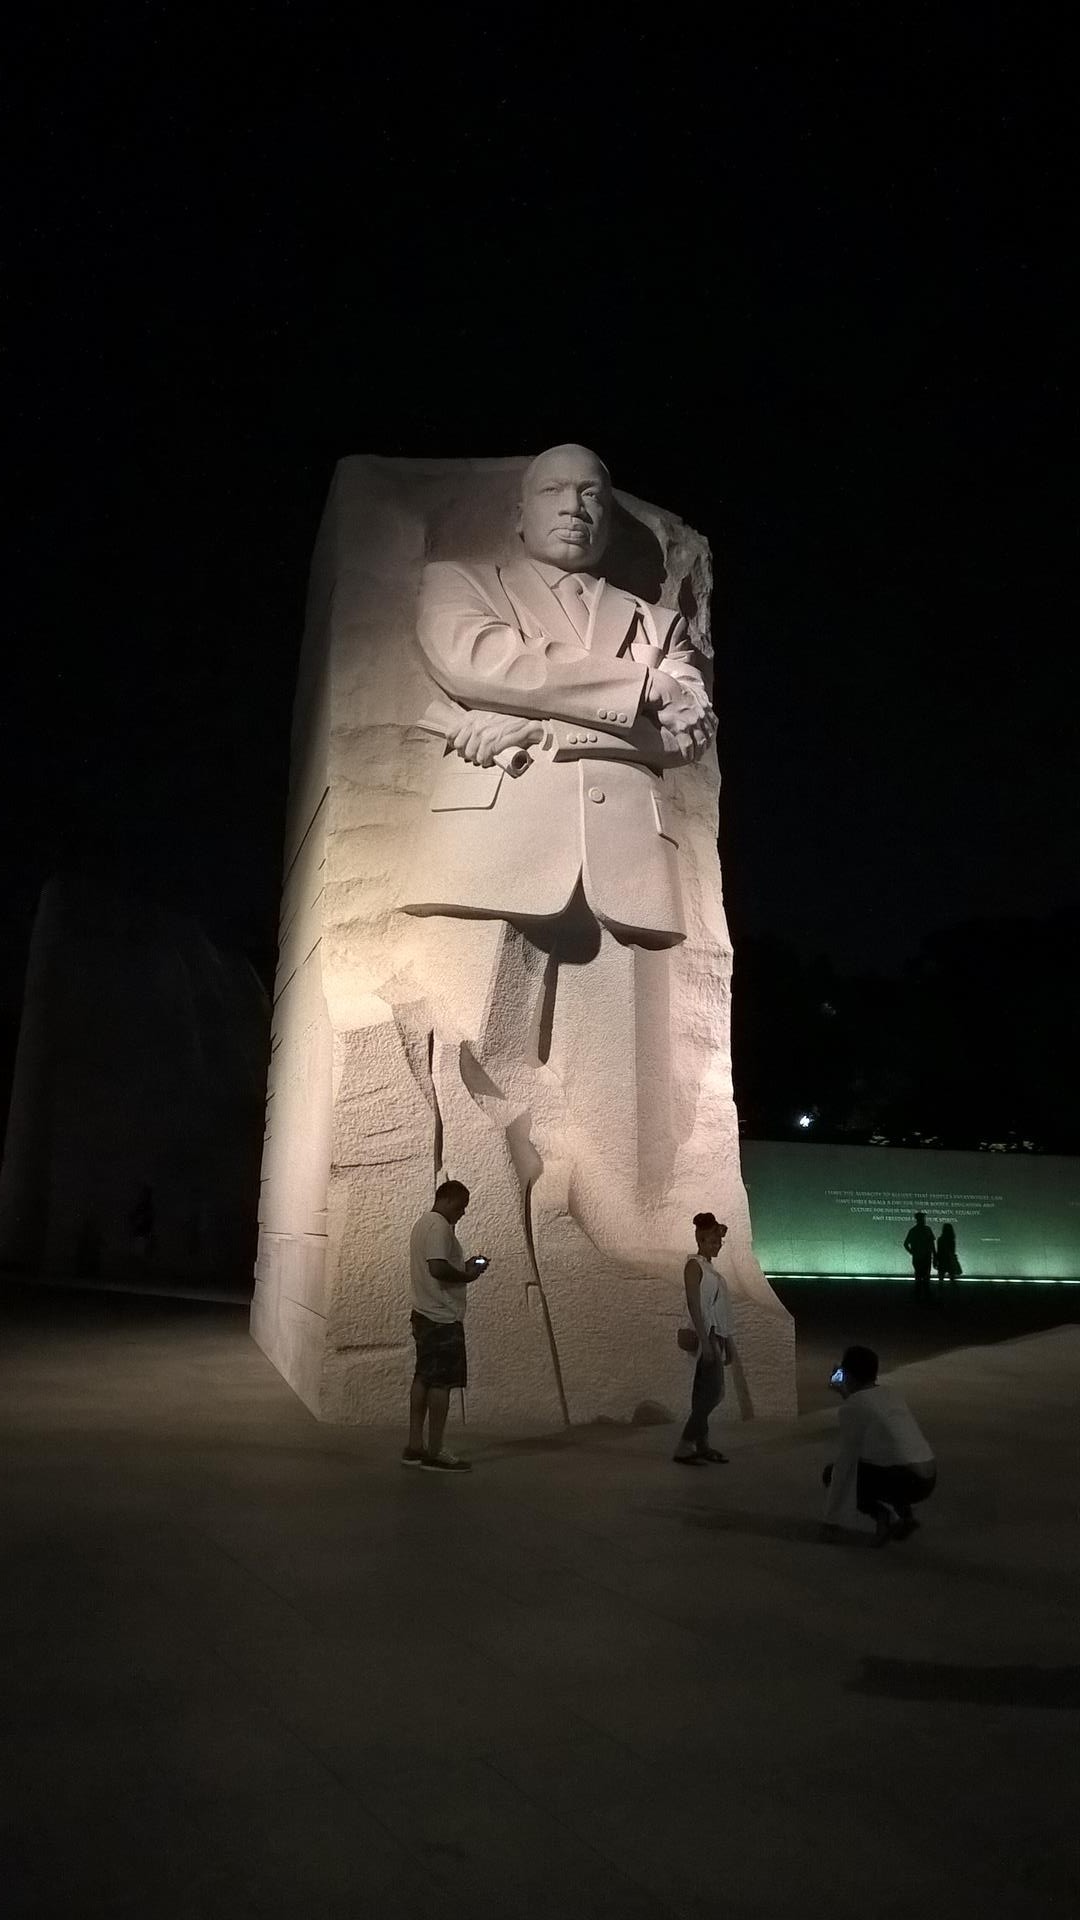 Relativ frisch fertiggestellt: Das Martin Luther King Memorial